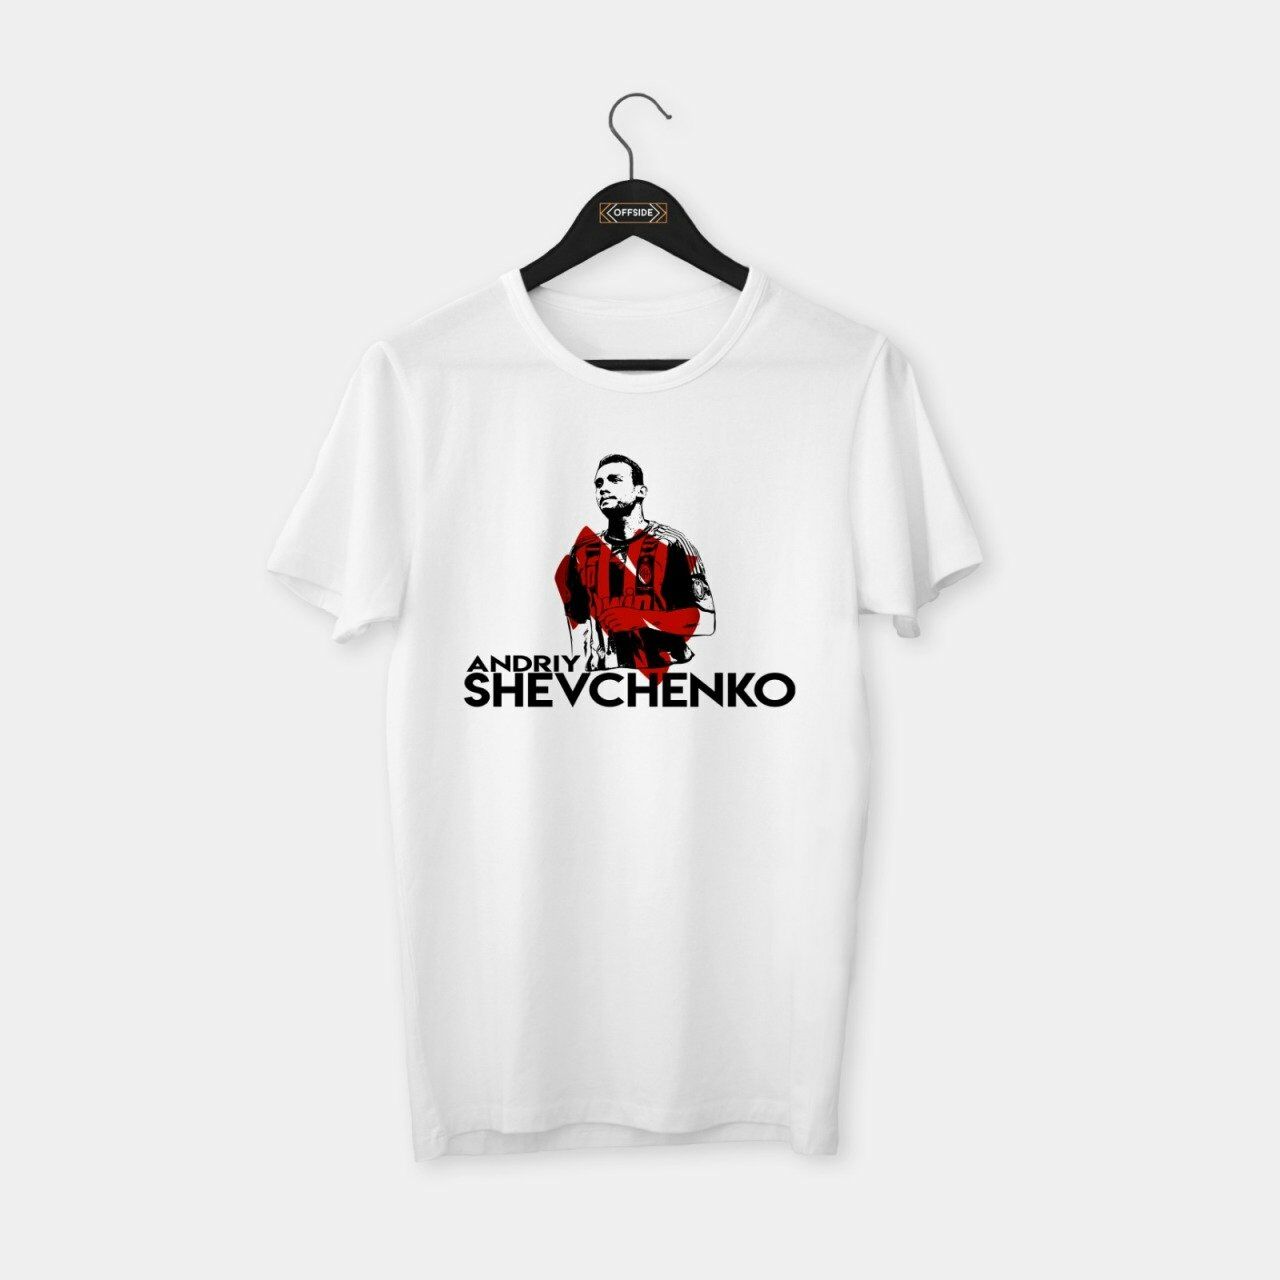 Shevchenko II T-shirt